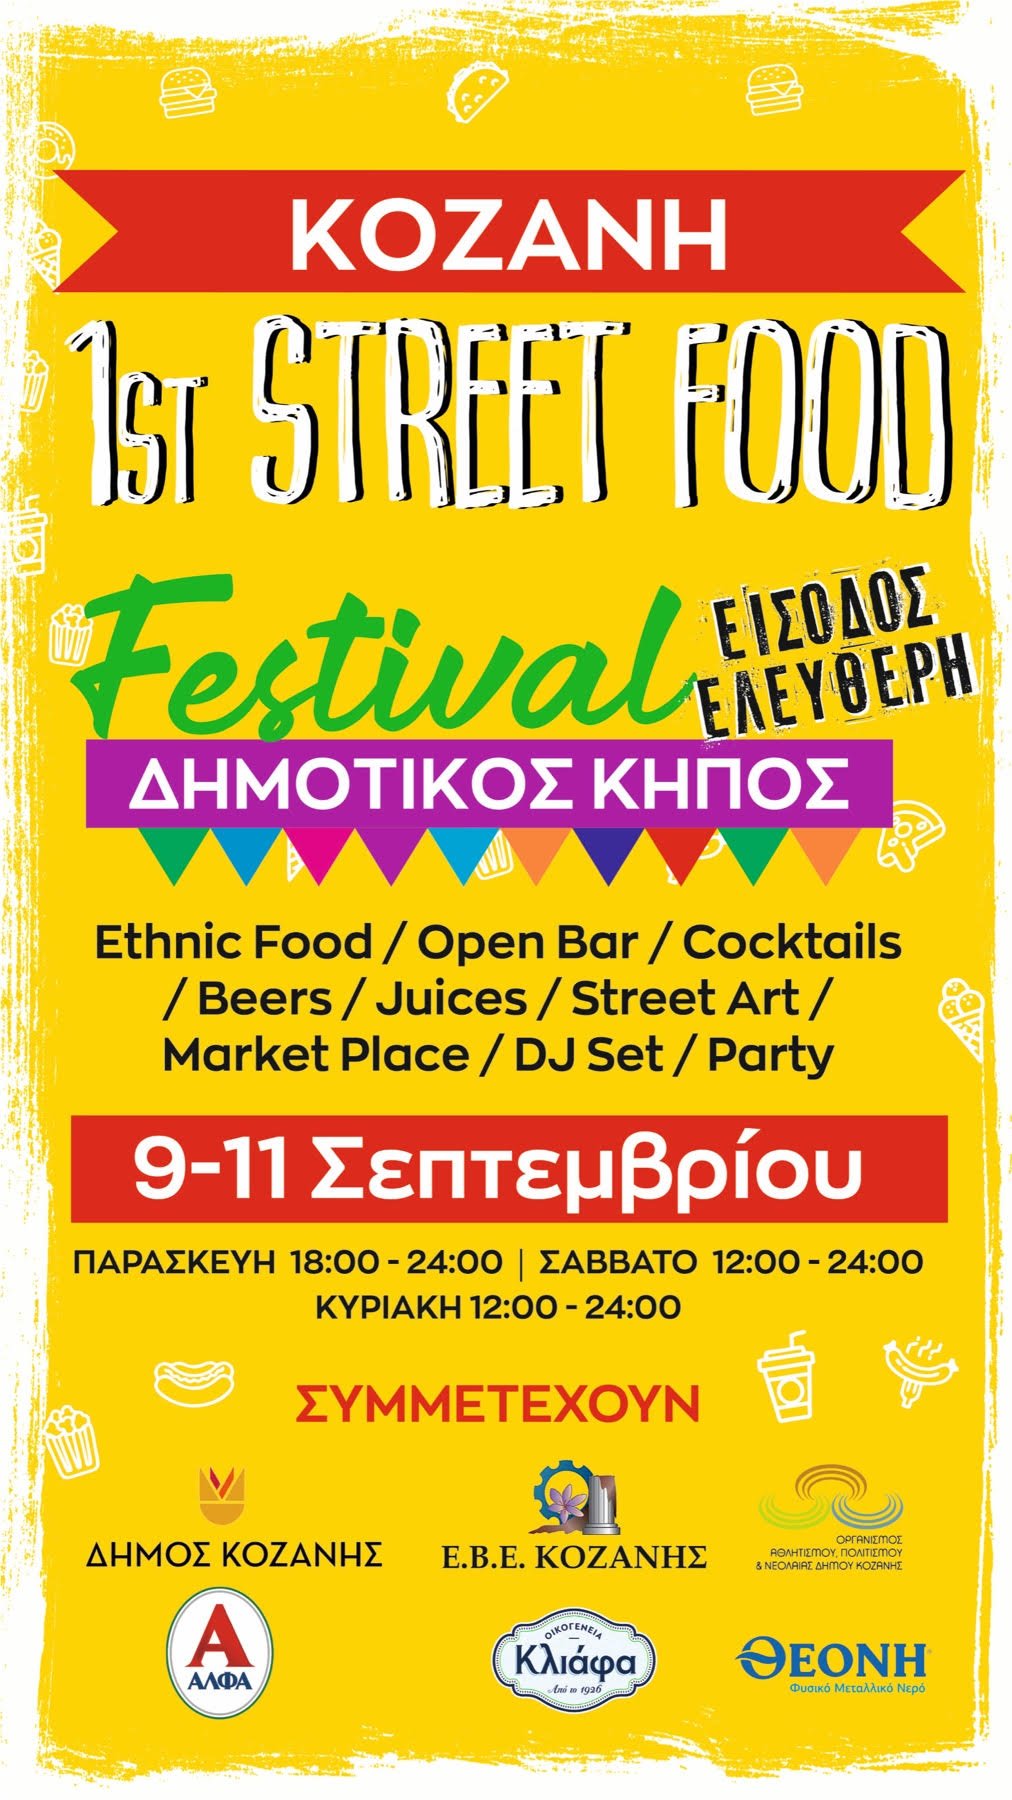 Κοζάνη: Έρχεται το 1st Street Food Festival! - 9 έως 11 Σεπτεμβρίου στον Δημοτικό Κήπο